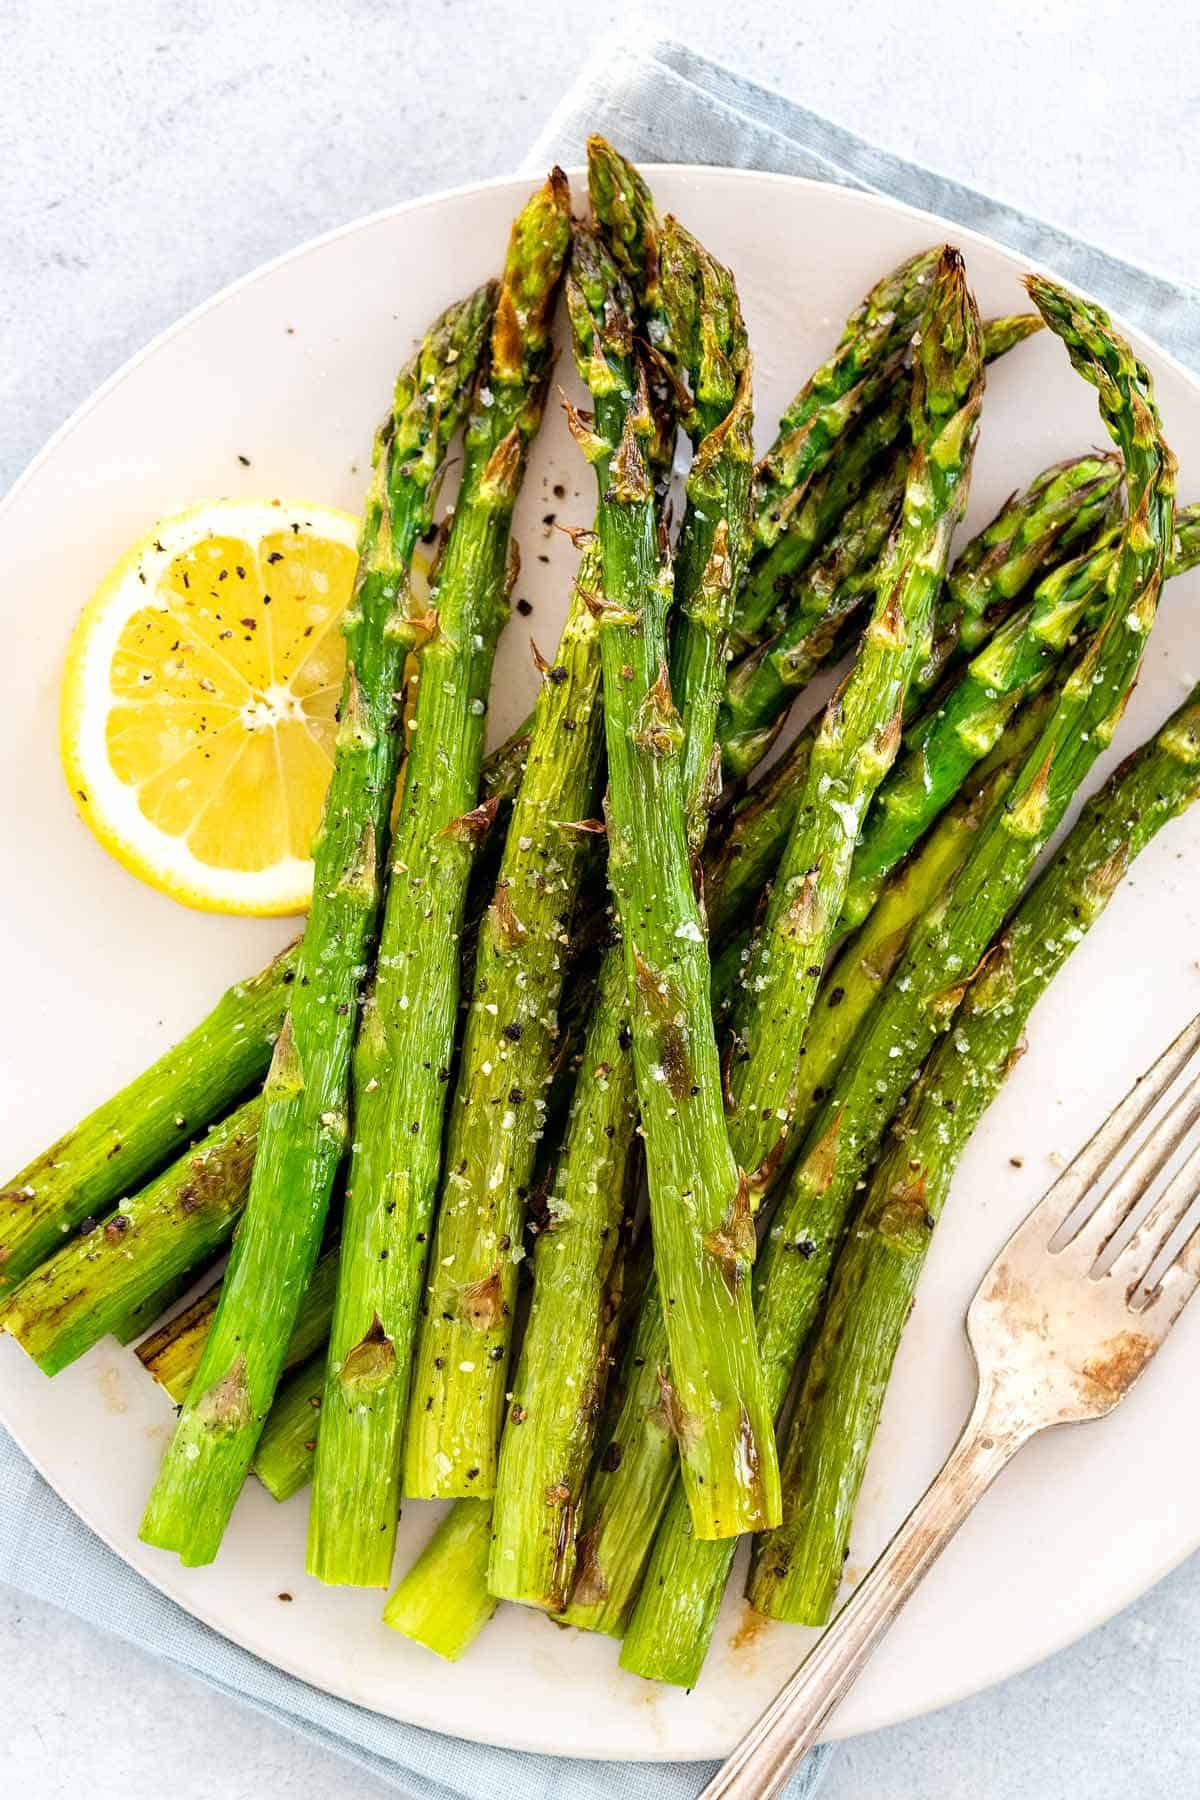 How Do I Cook Asparagus